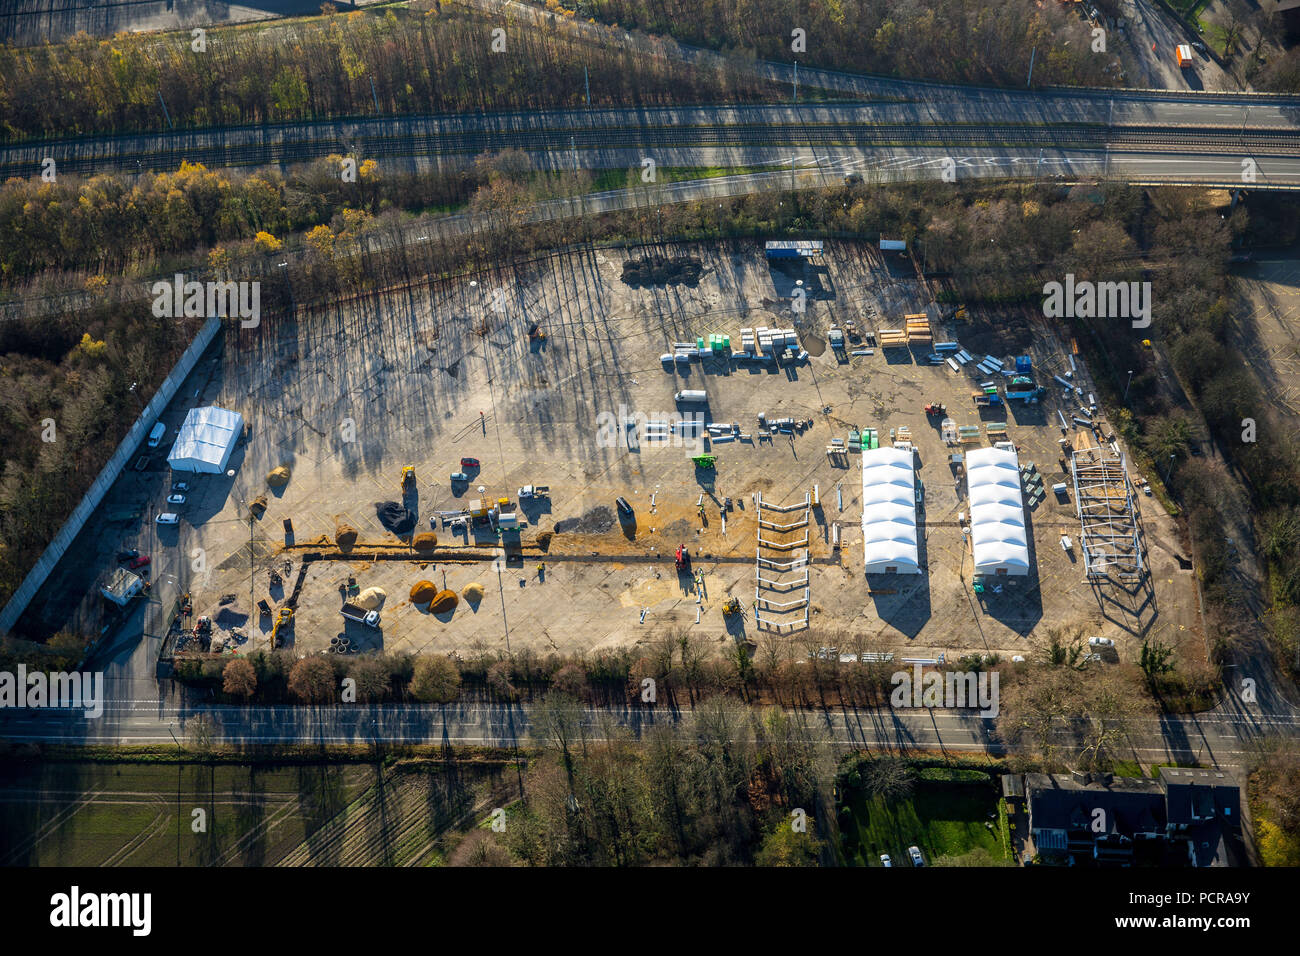 Bau eines leichten Flüchtlinge Zuflucht auf dem ehemaligen Parkplatz bei Opel - Werk 1, Wittener Straße, Bochum, Ruhrgebiet, Nordrhein-Westfalen, Deutschland Stockfoto